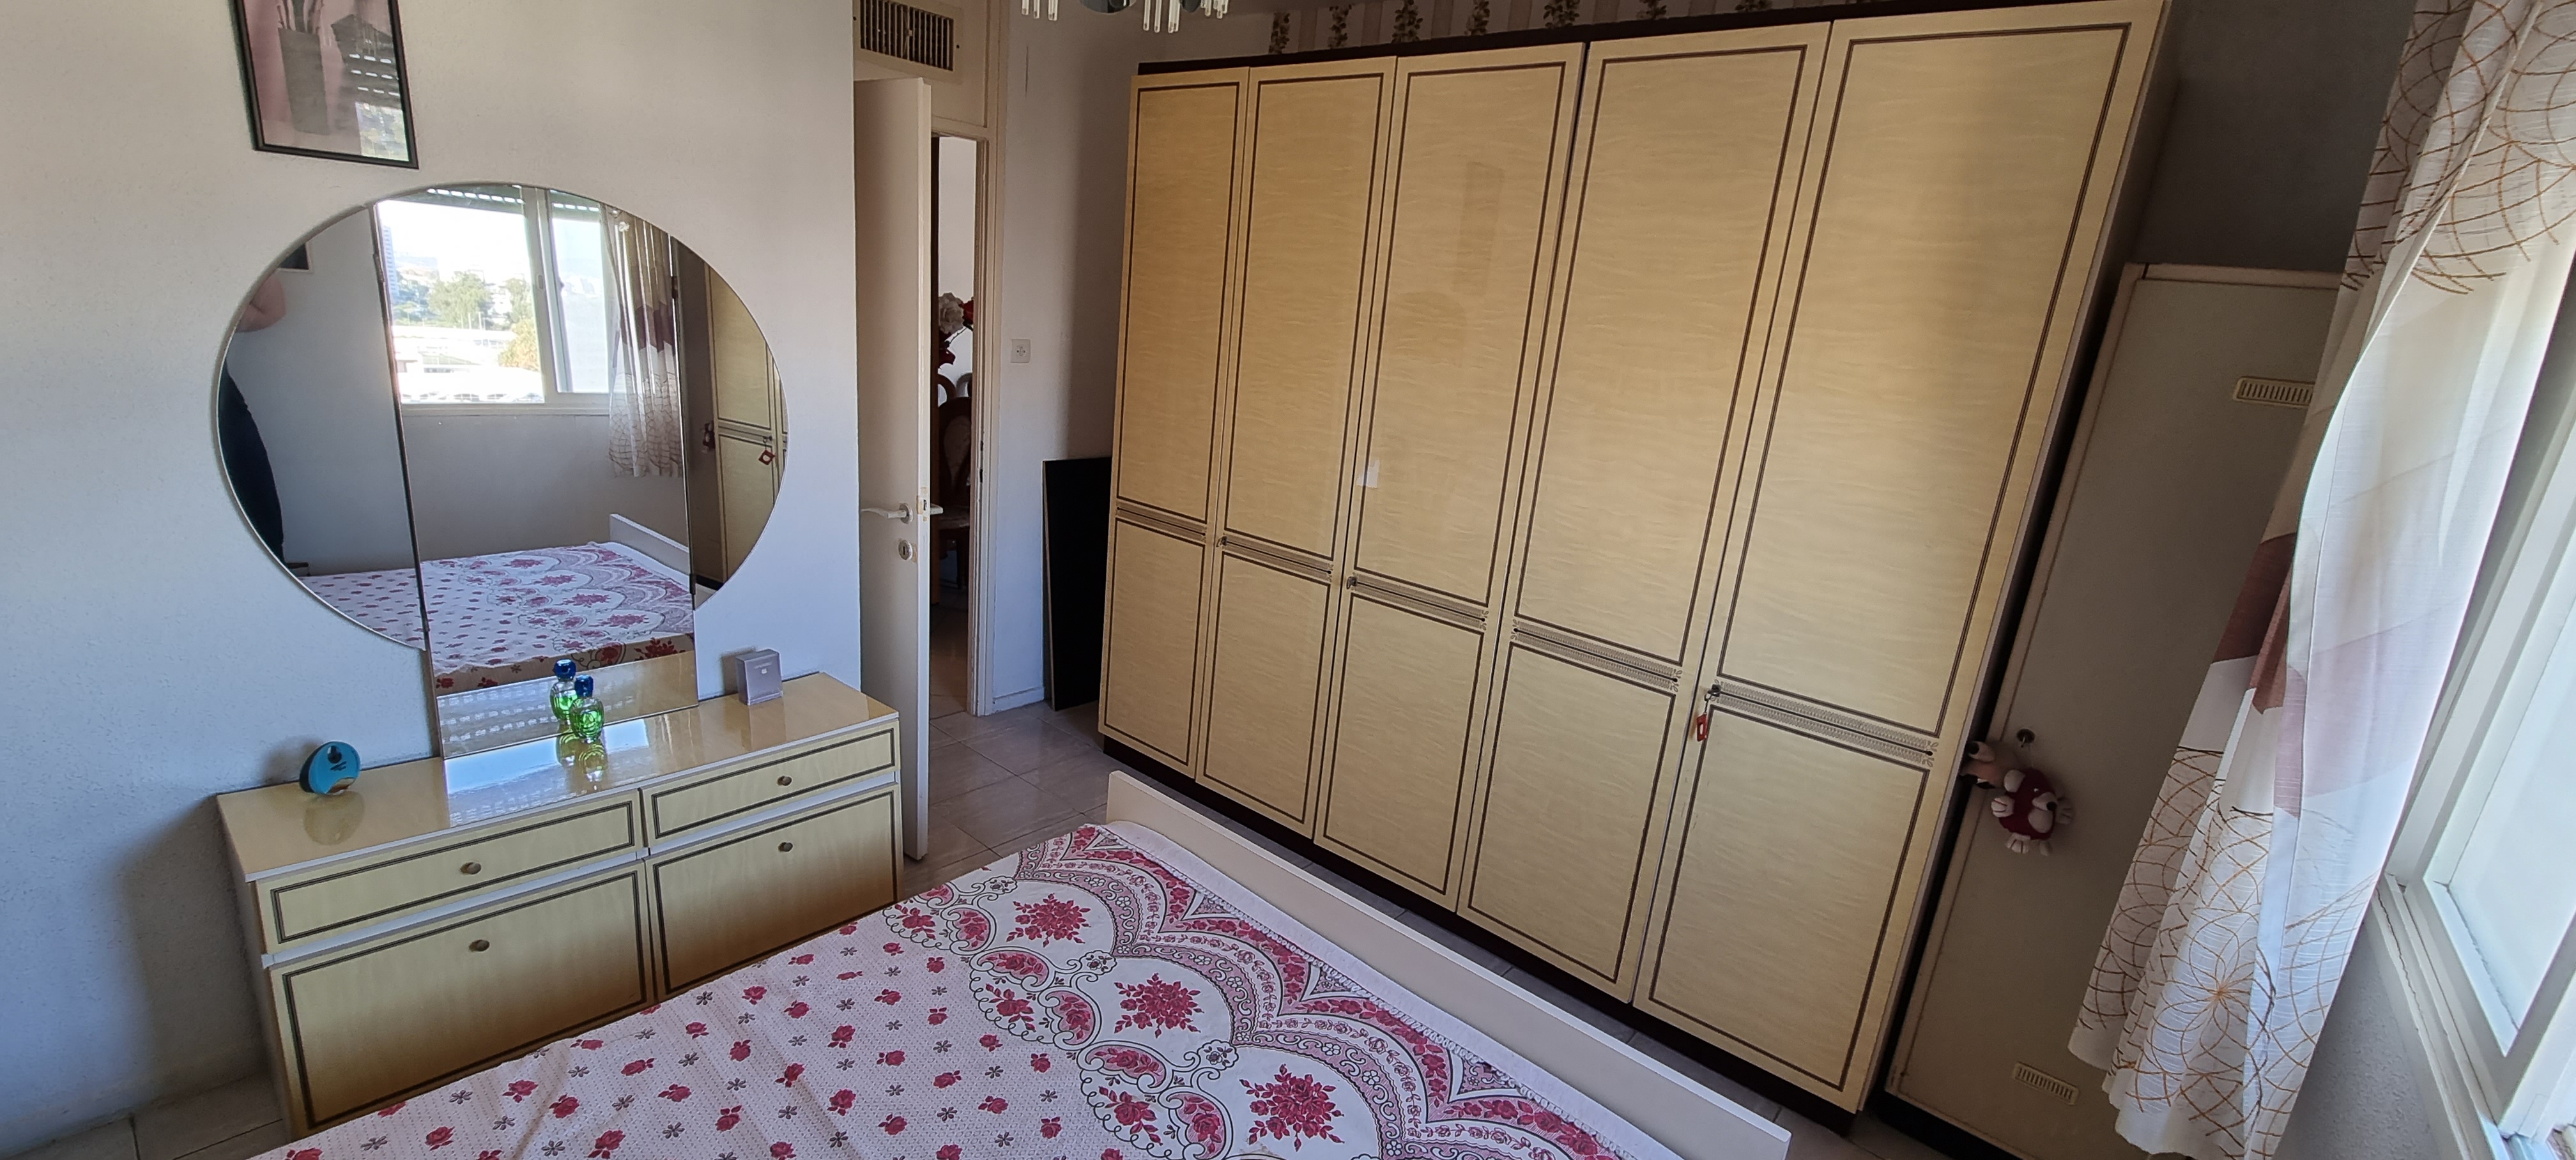 תמונה 1 ,חדר שינה בצבע קרם למכירה בקרית ים ריהוט  חדרי שינה